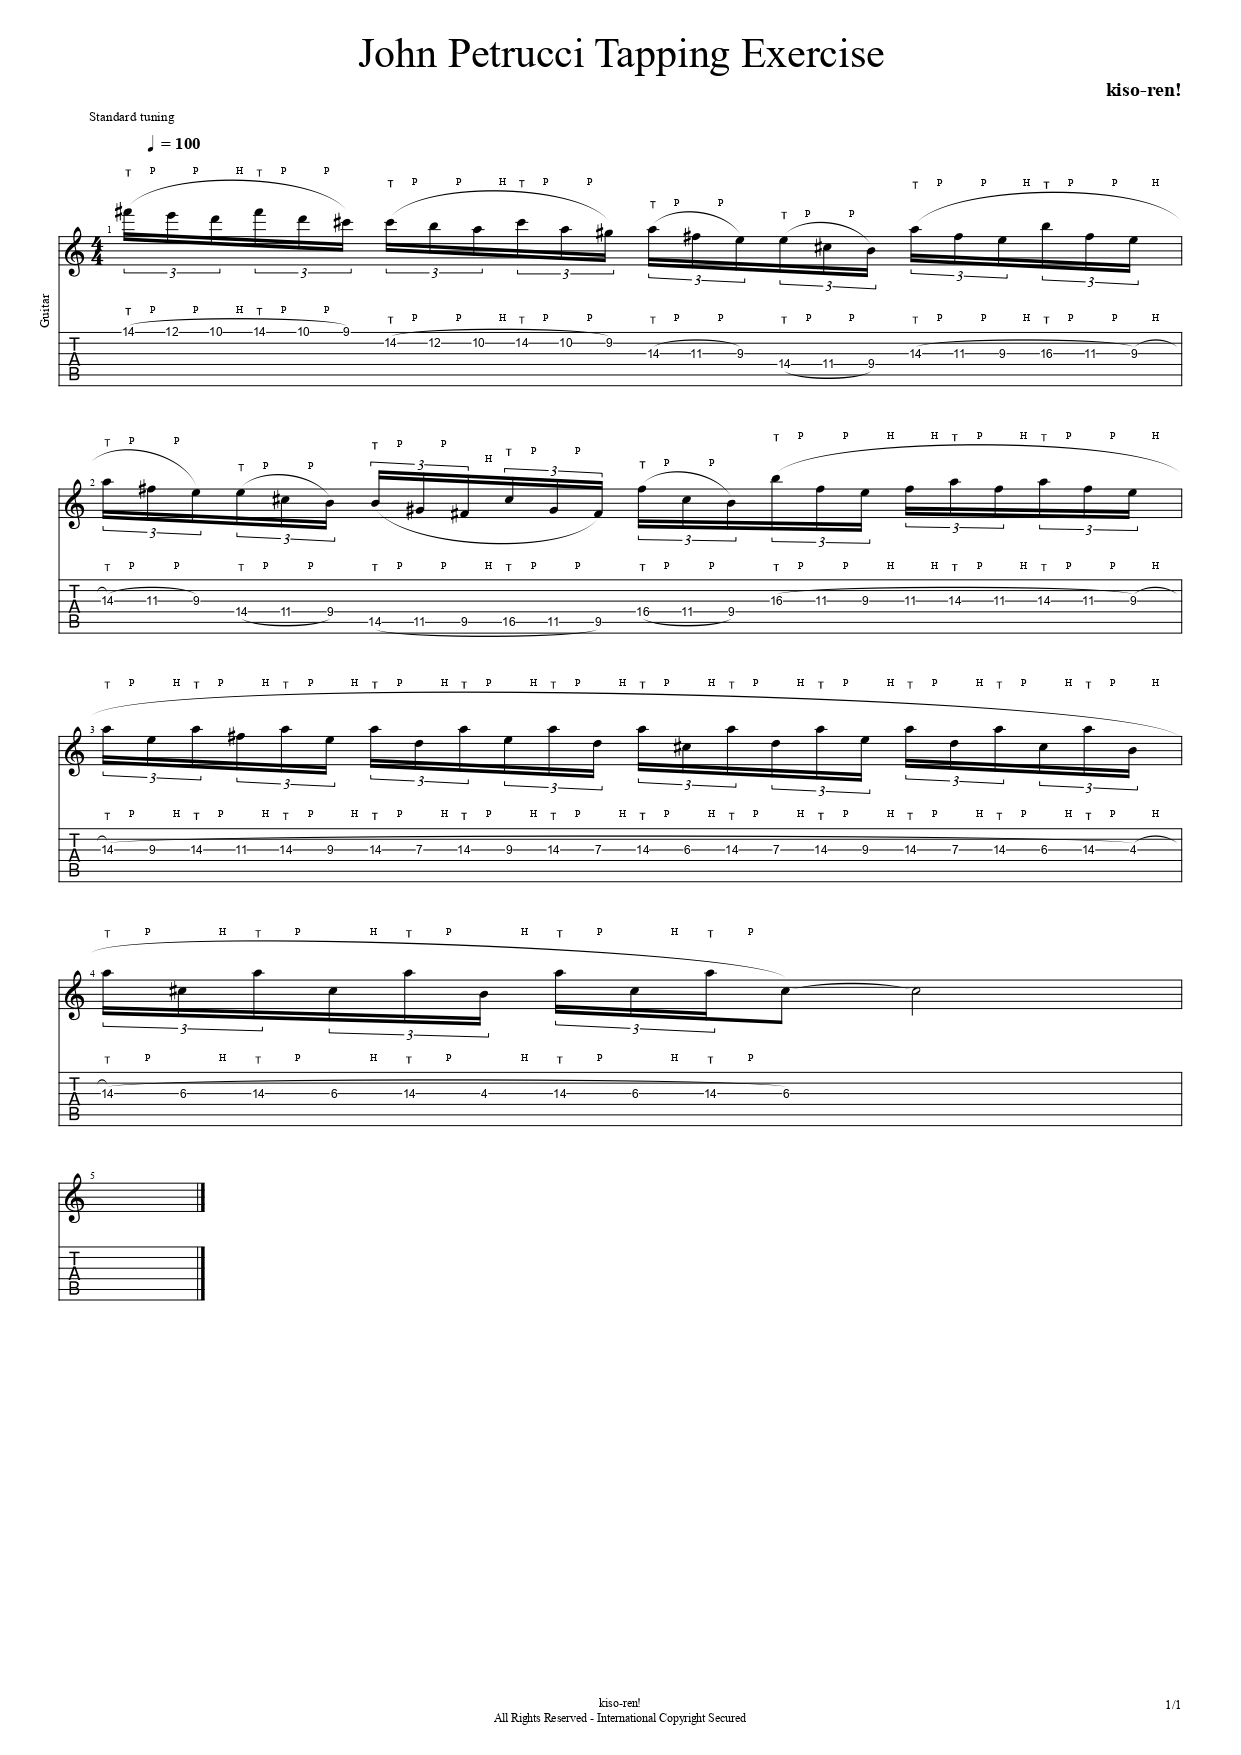 【ギタータッピング上達基礎練習楽譜TAB】John Petrucci Tapping Exercise ジョン･ペトルーシ タッピング練習【Practice TAB】【ライトハンド】